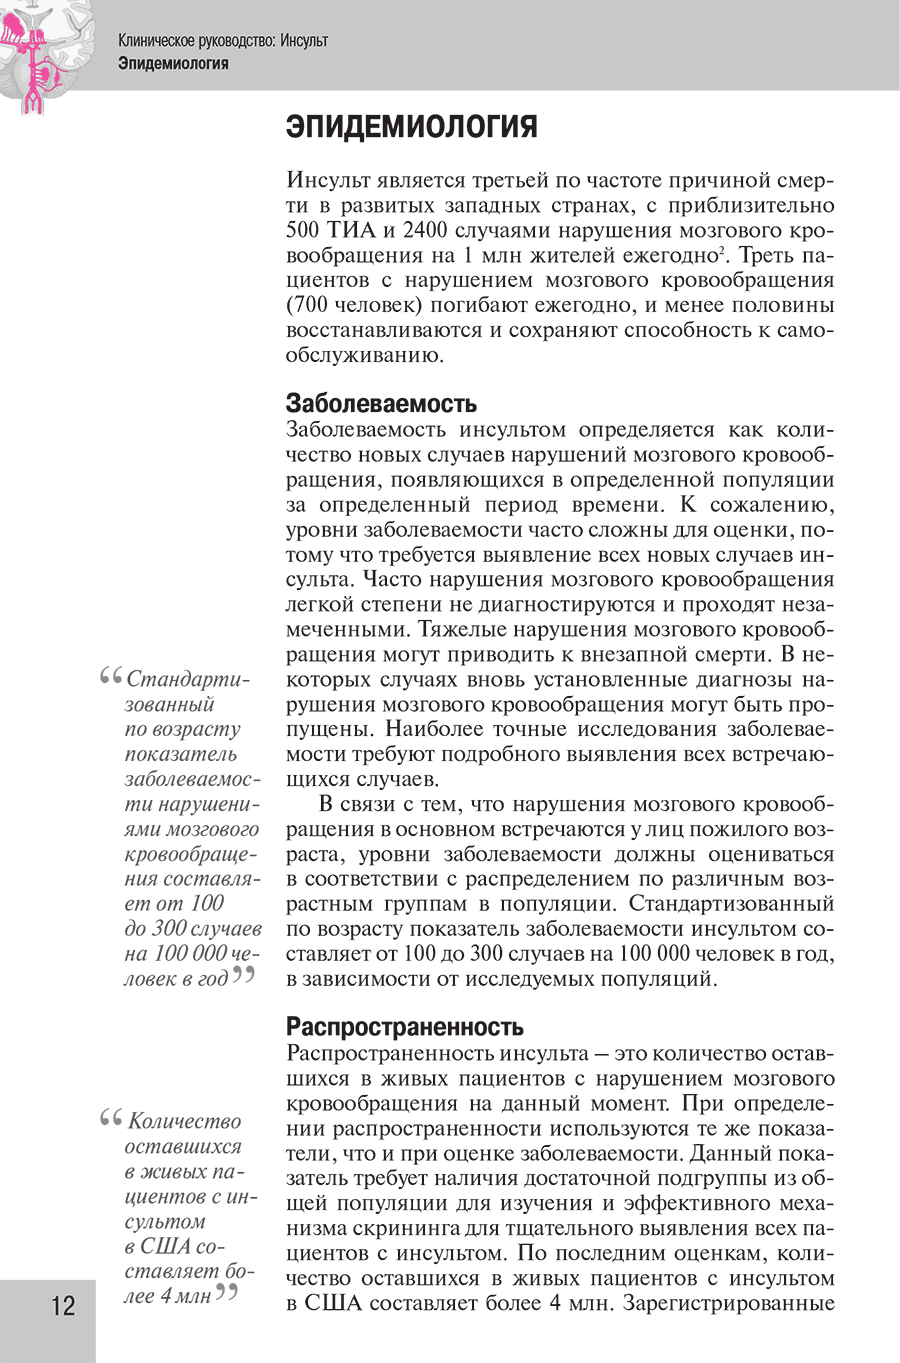 Пример страницы из книги "Инсульт: Клиническое руководство" - Хеннерици М. Г.